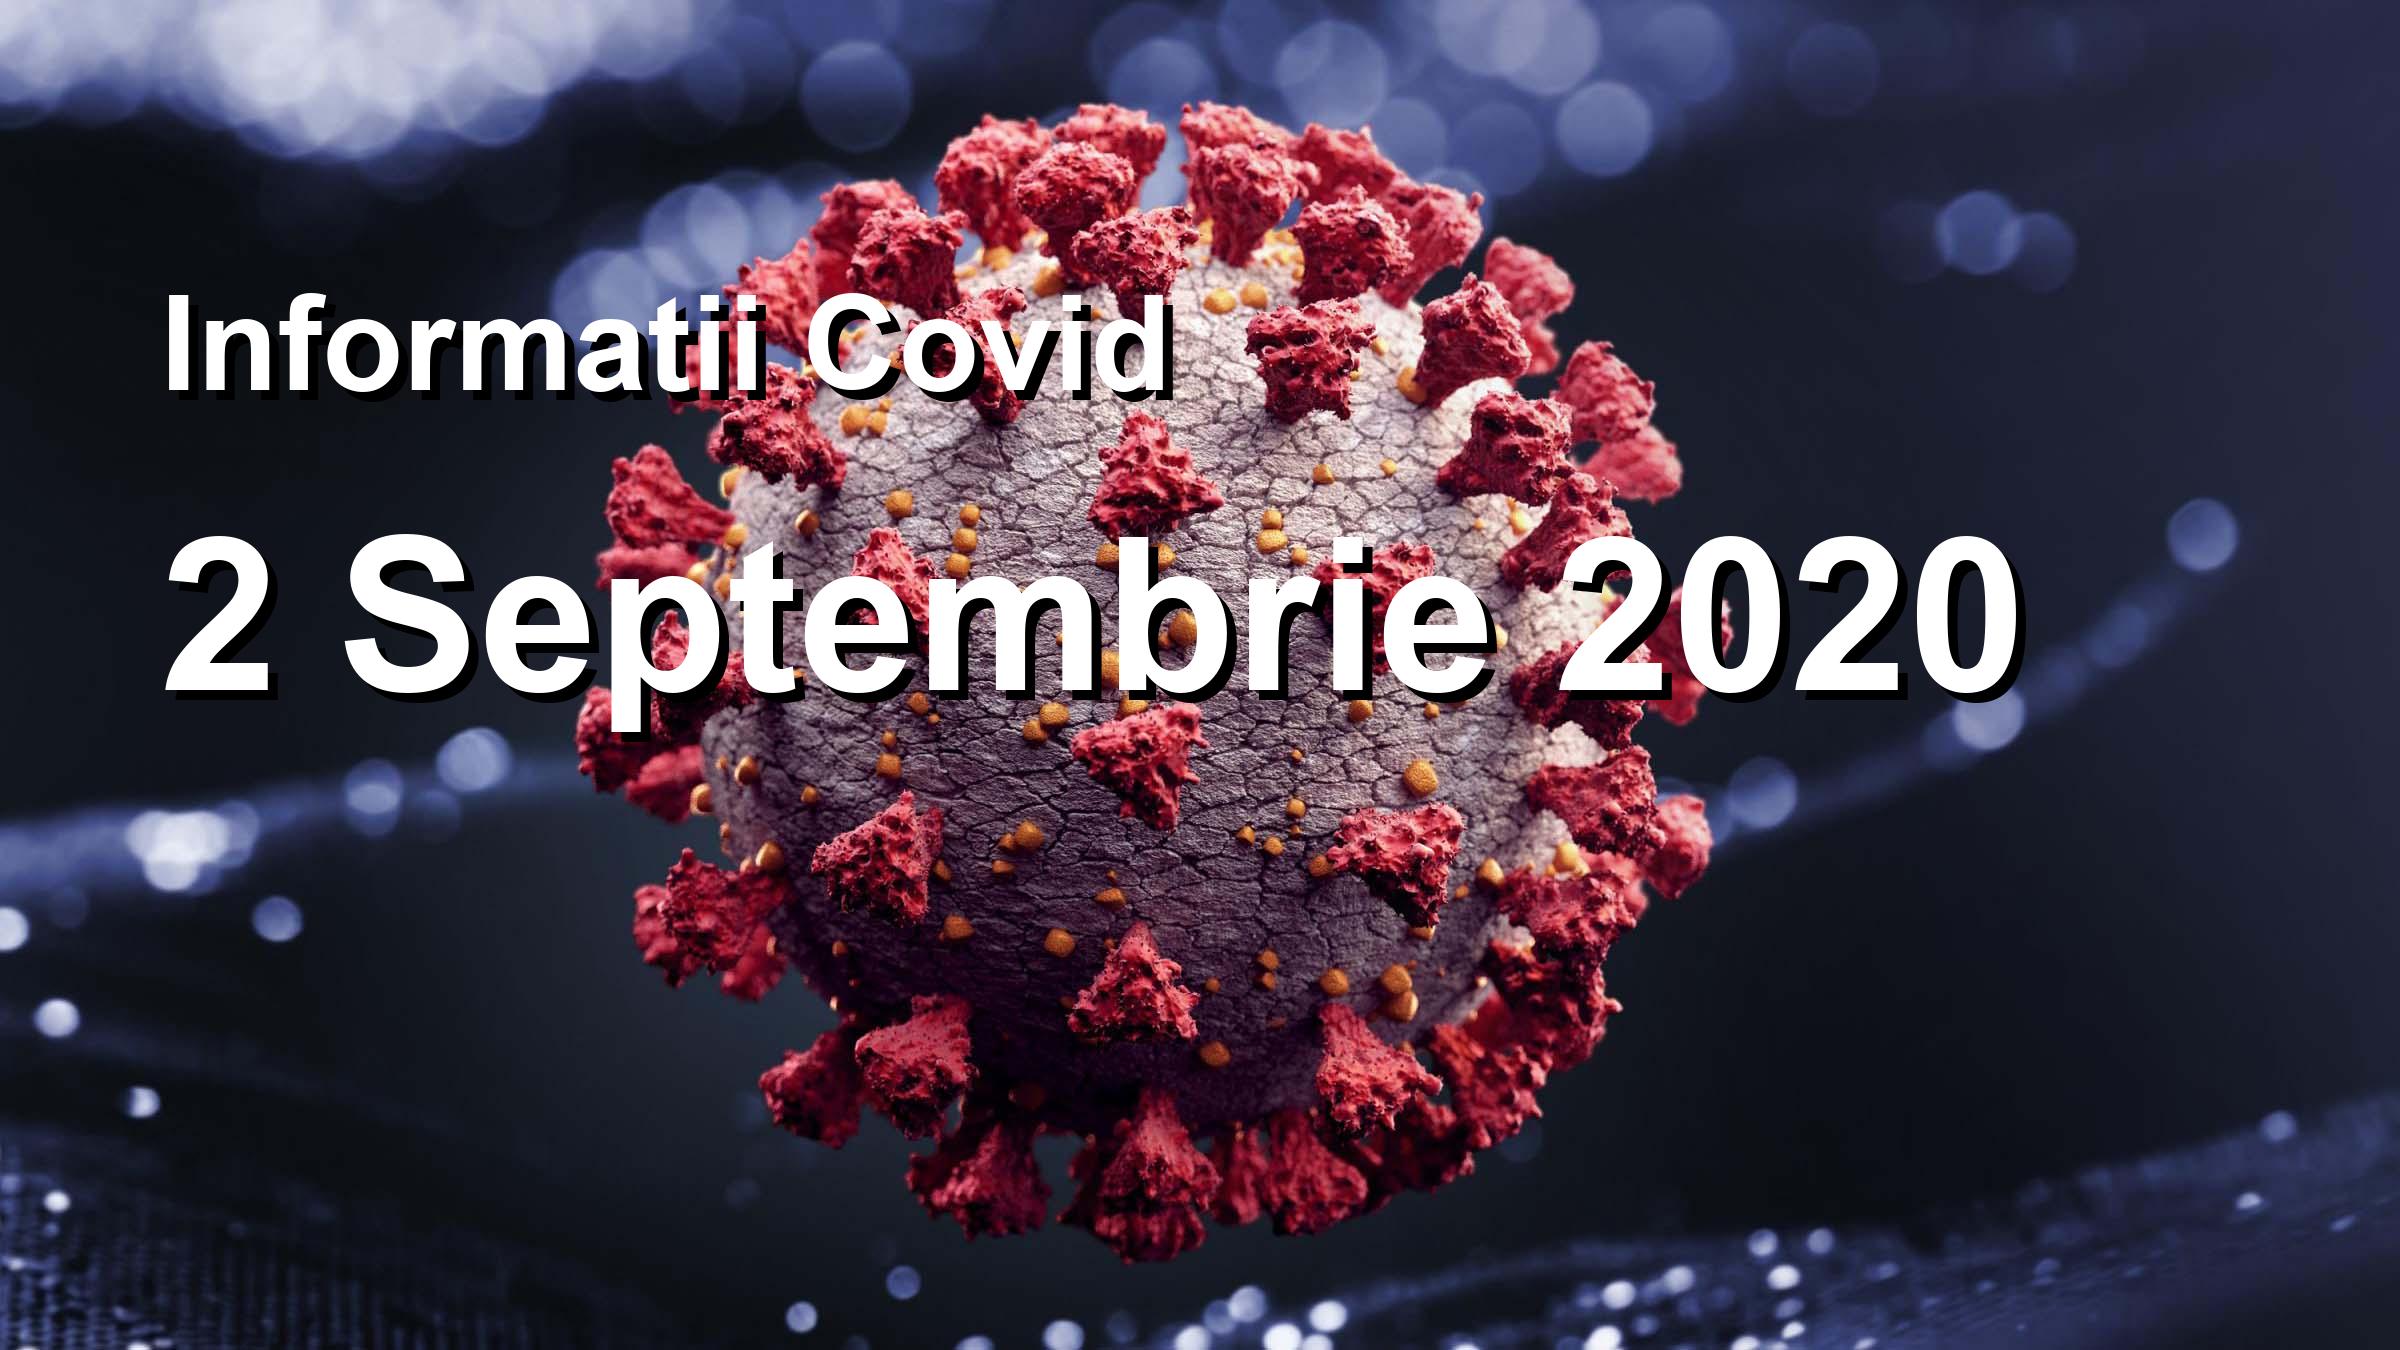 Informatii Covid-19 pentru 2 Septembrie 2020: 1298 infectari, 26816 teste. | Coronavirus Romania